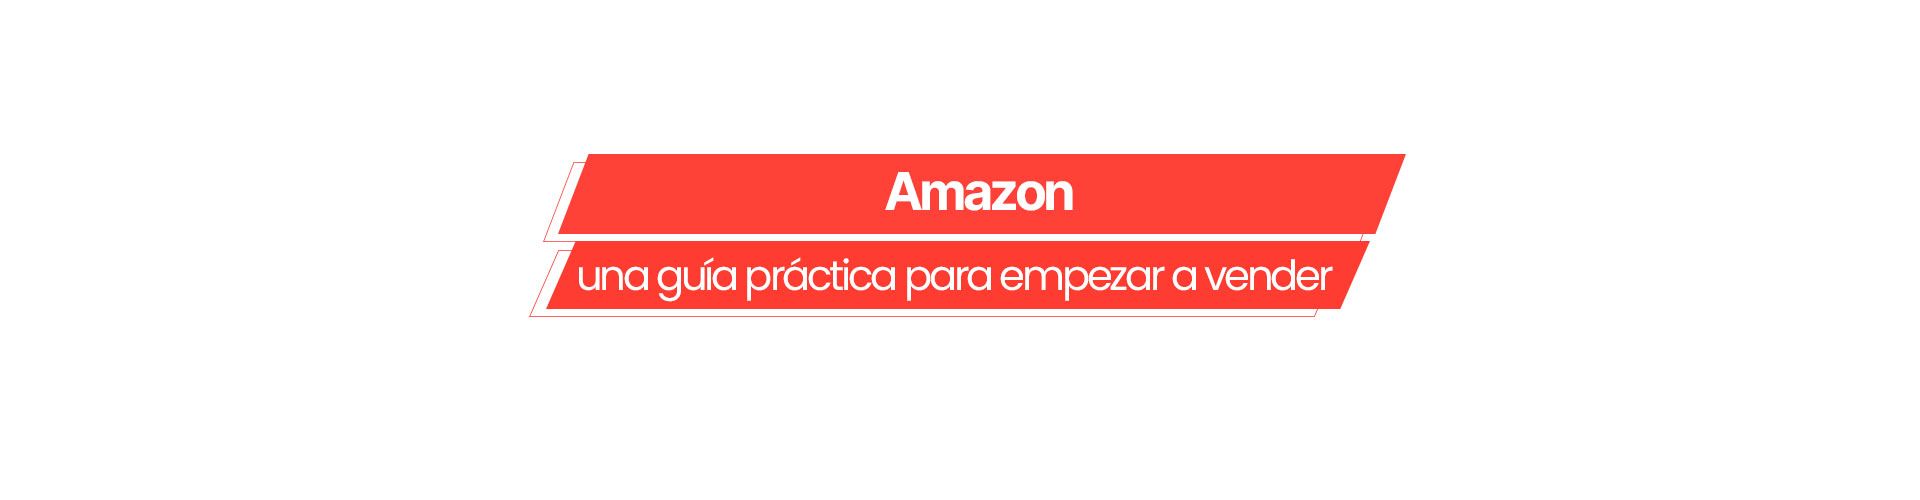 guia vender amazon Conoce “Amazon: una guía práctica para empezar a vender”